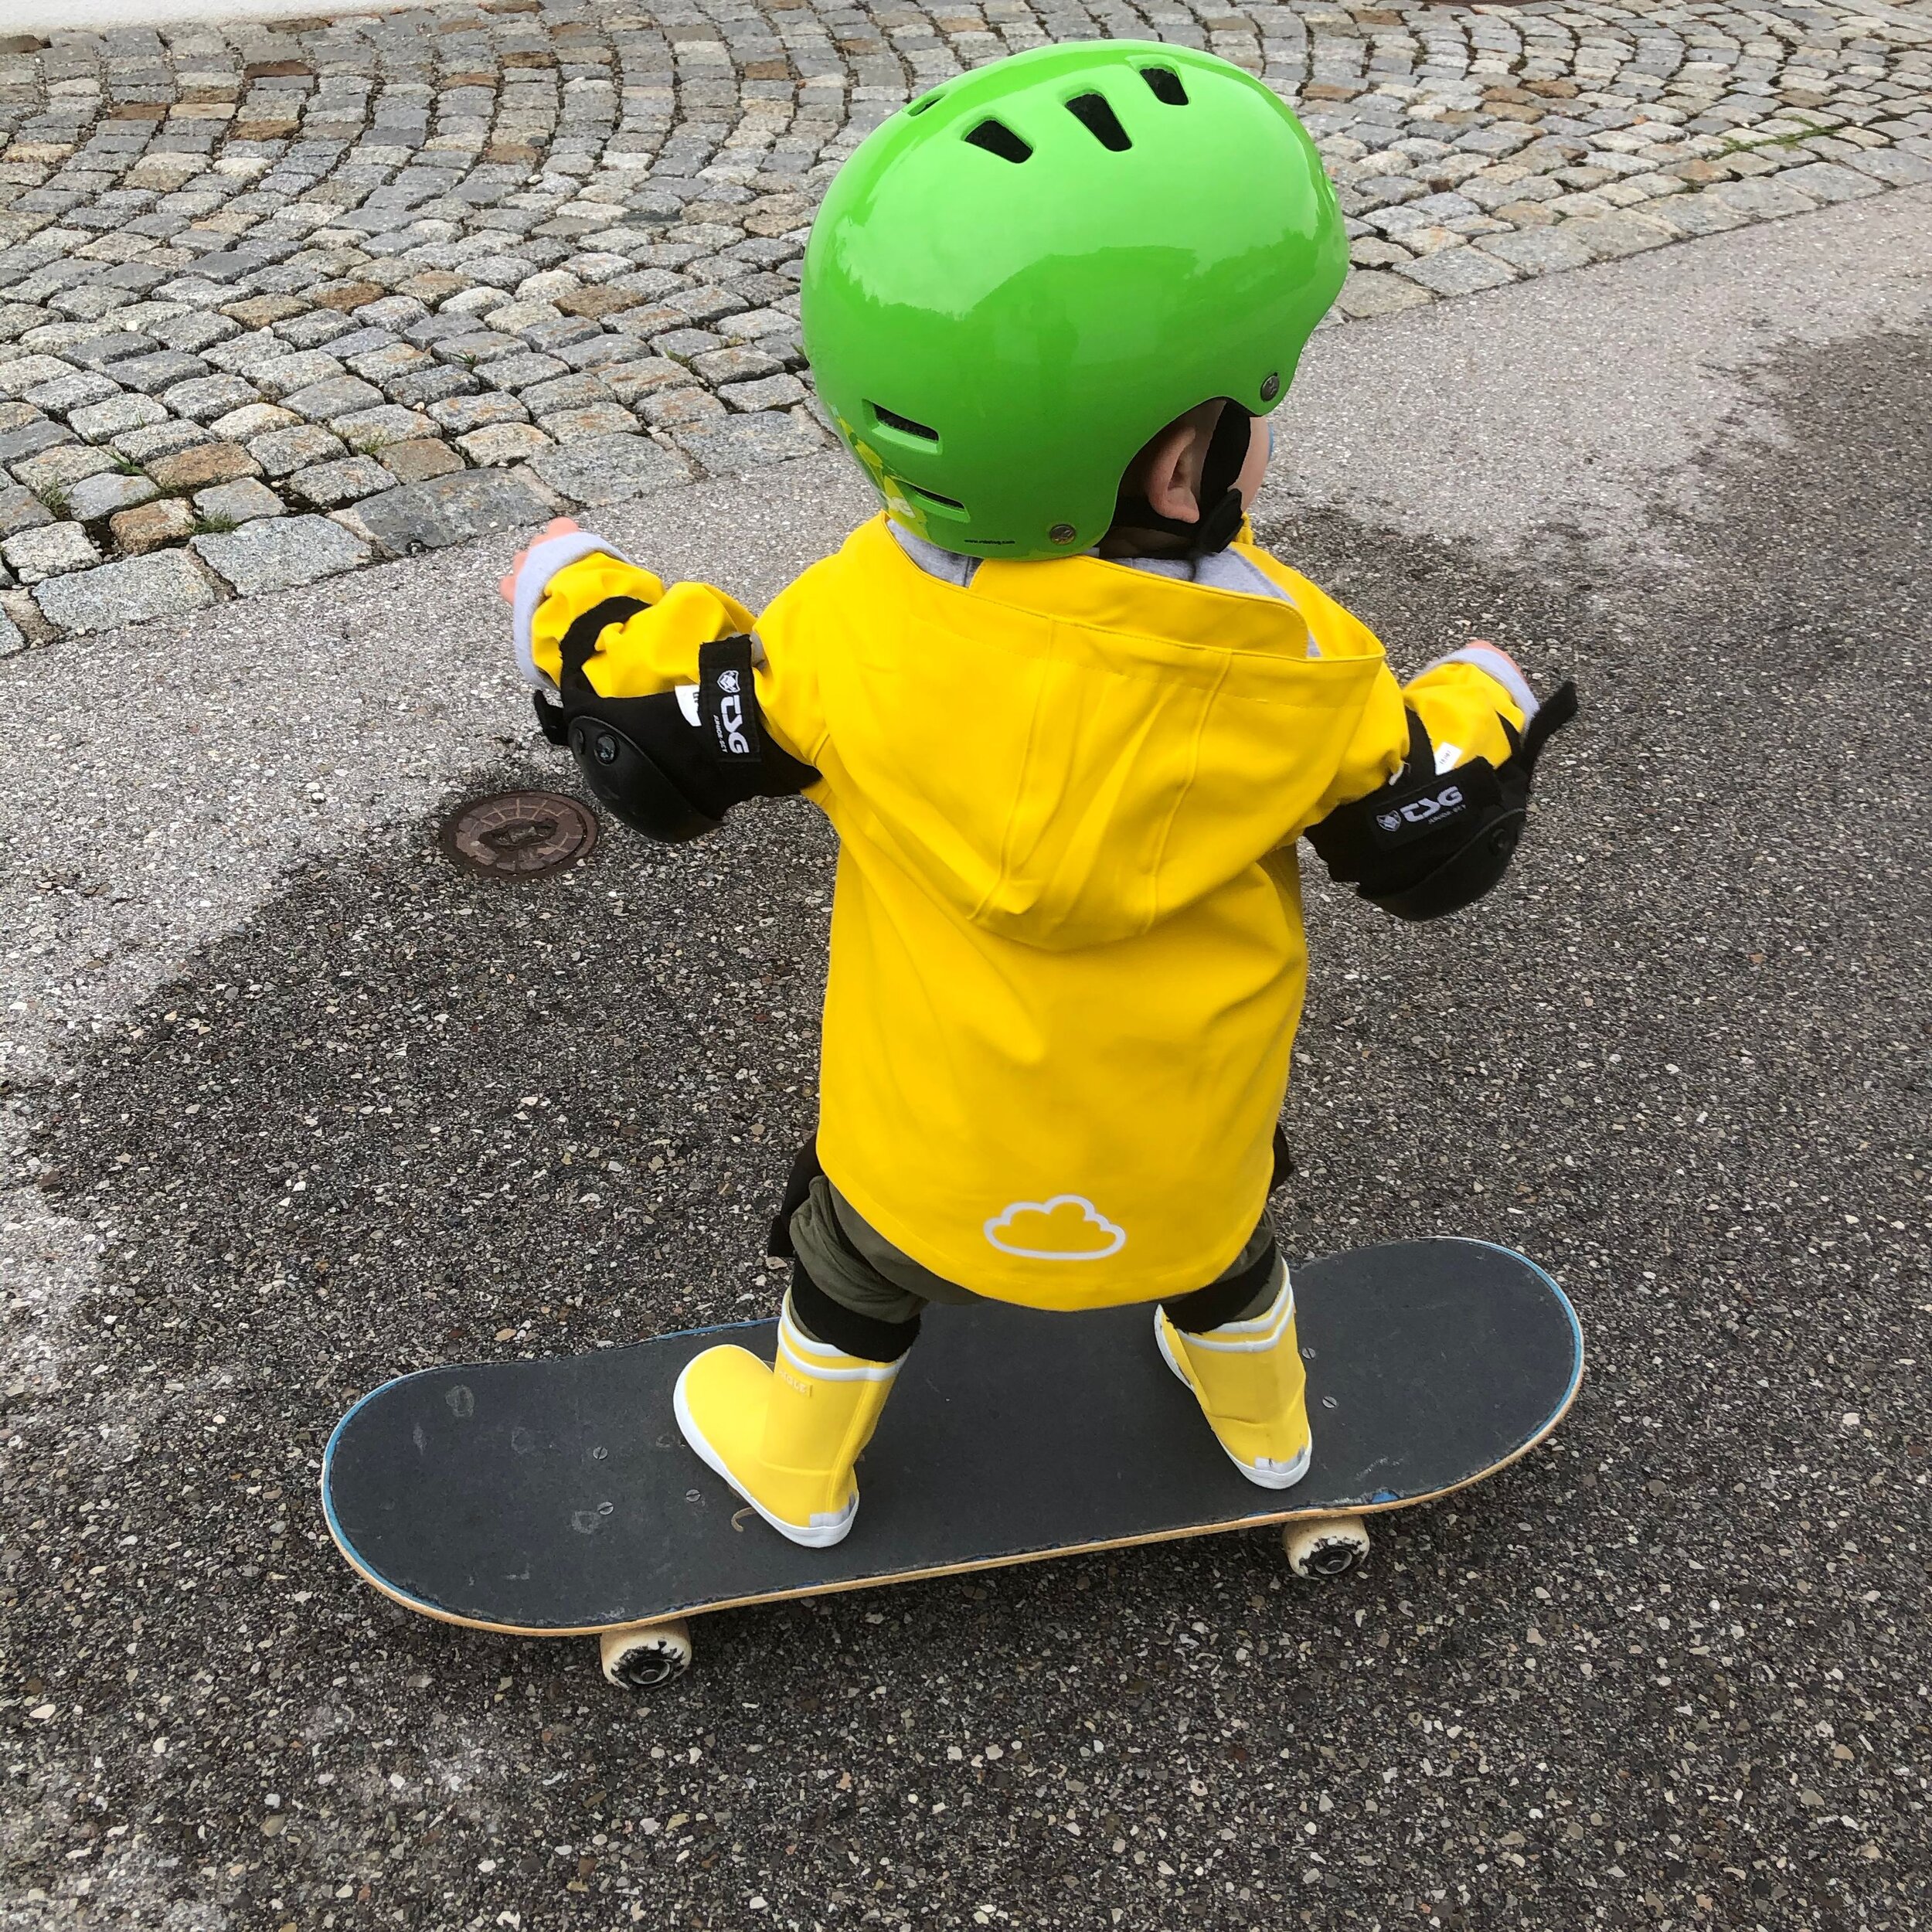 Skateboard Boy Skaten lernen Anleitung.jpg